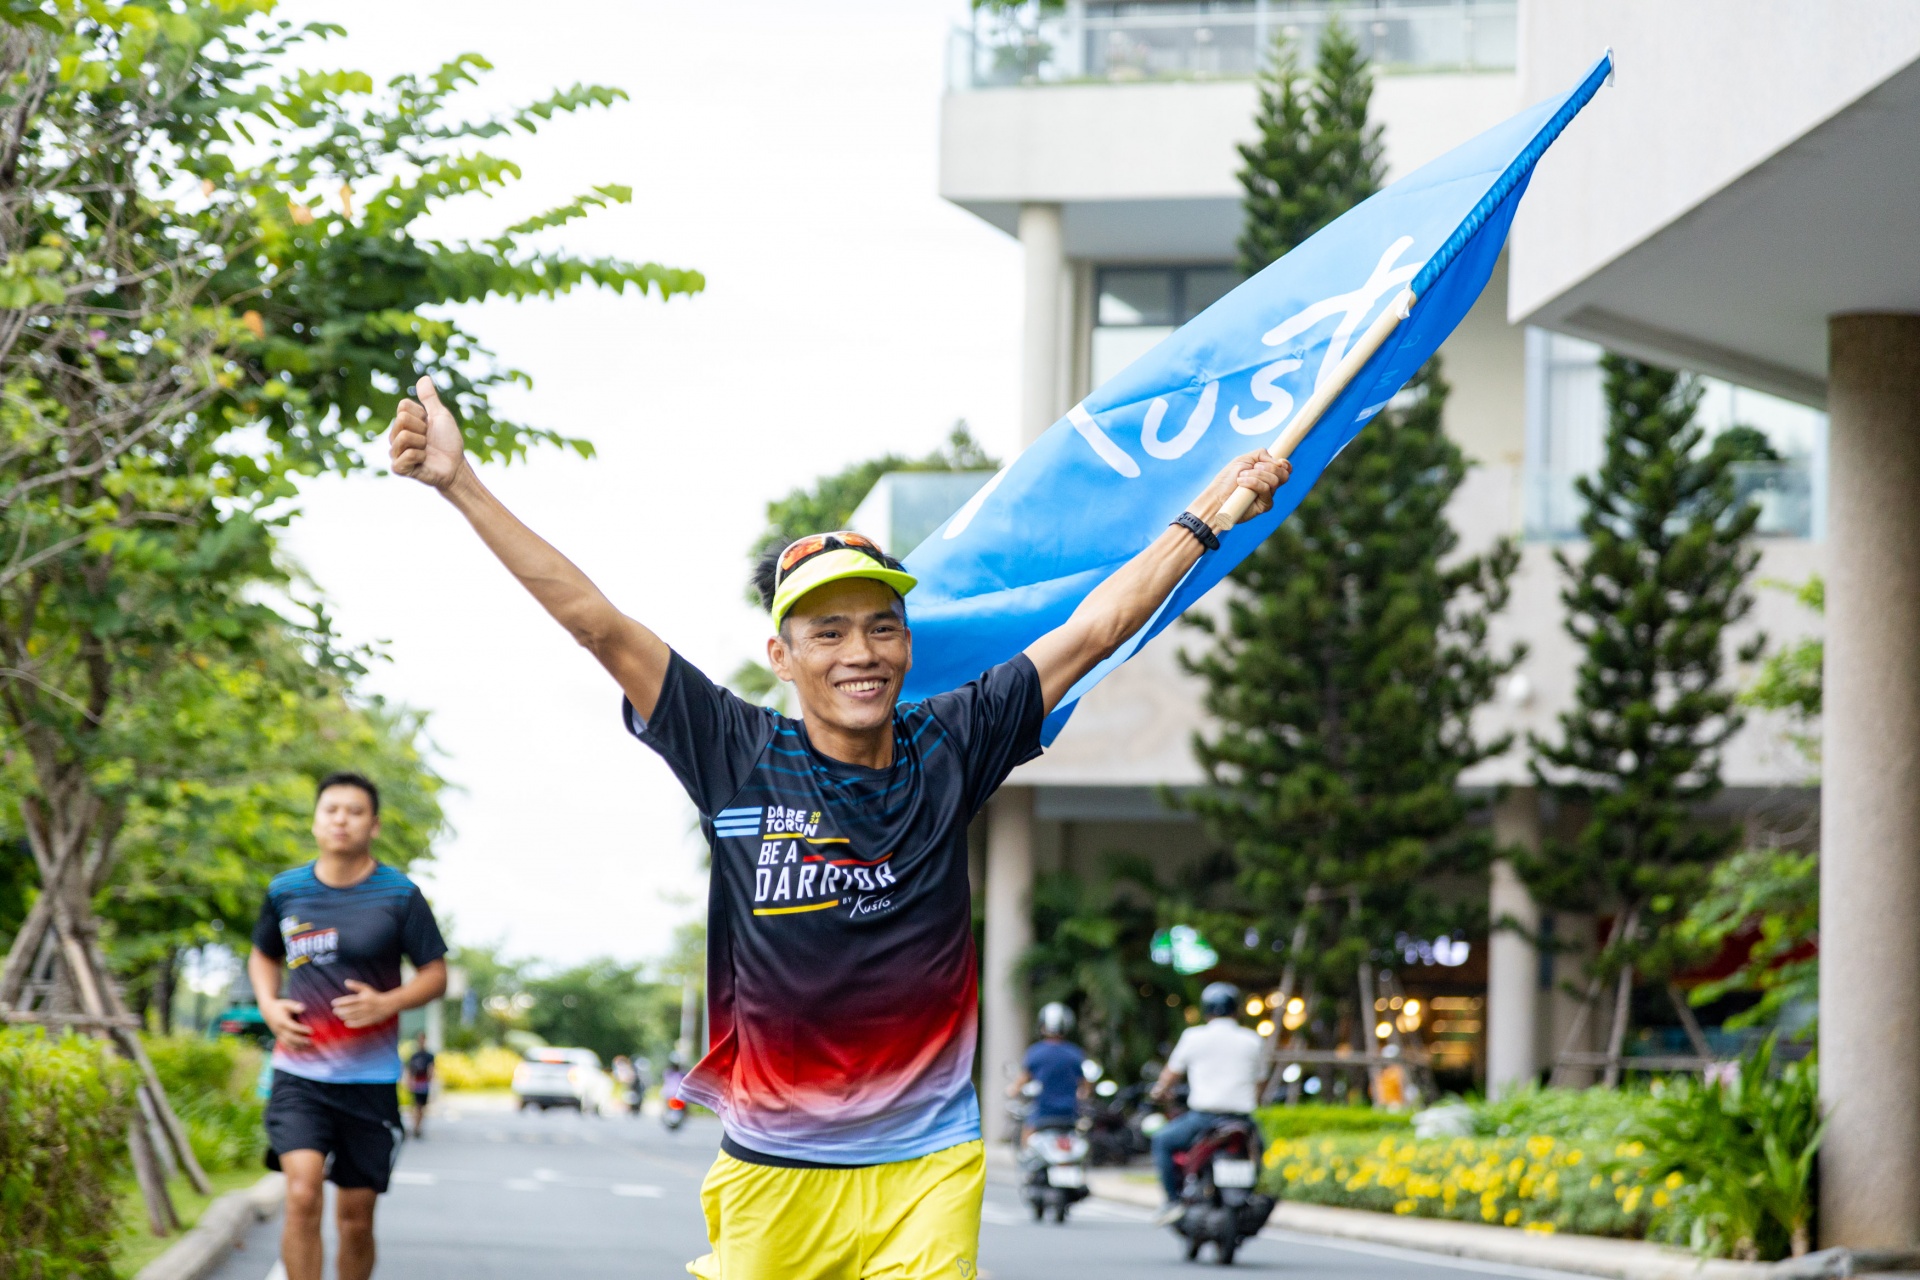 Cross-Vietnam ultramarathoner and Dare to Run make history with fundraising